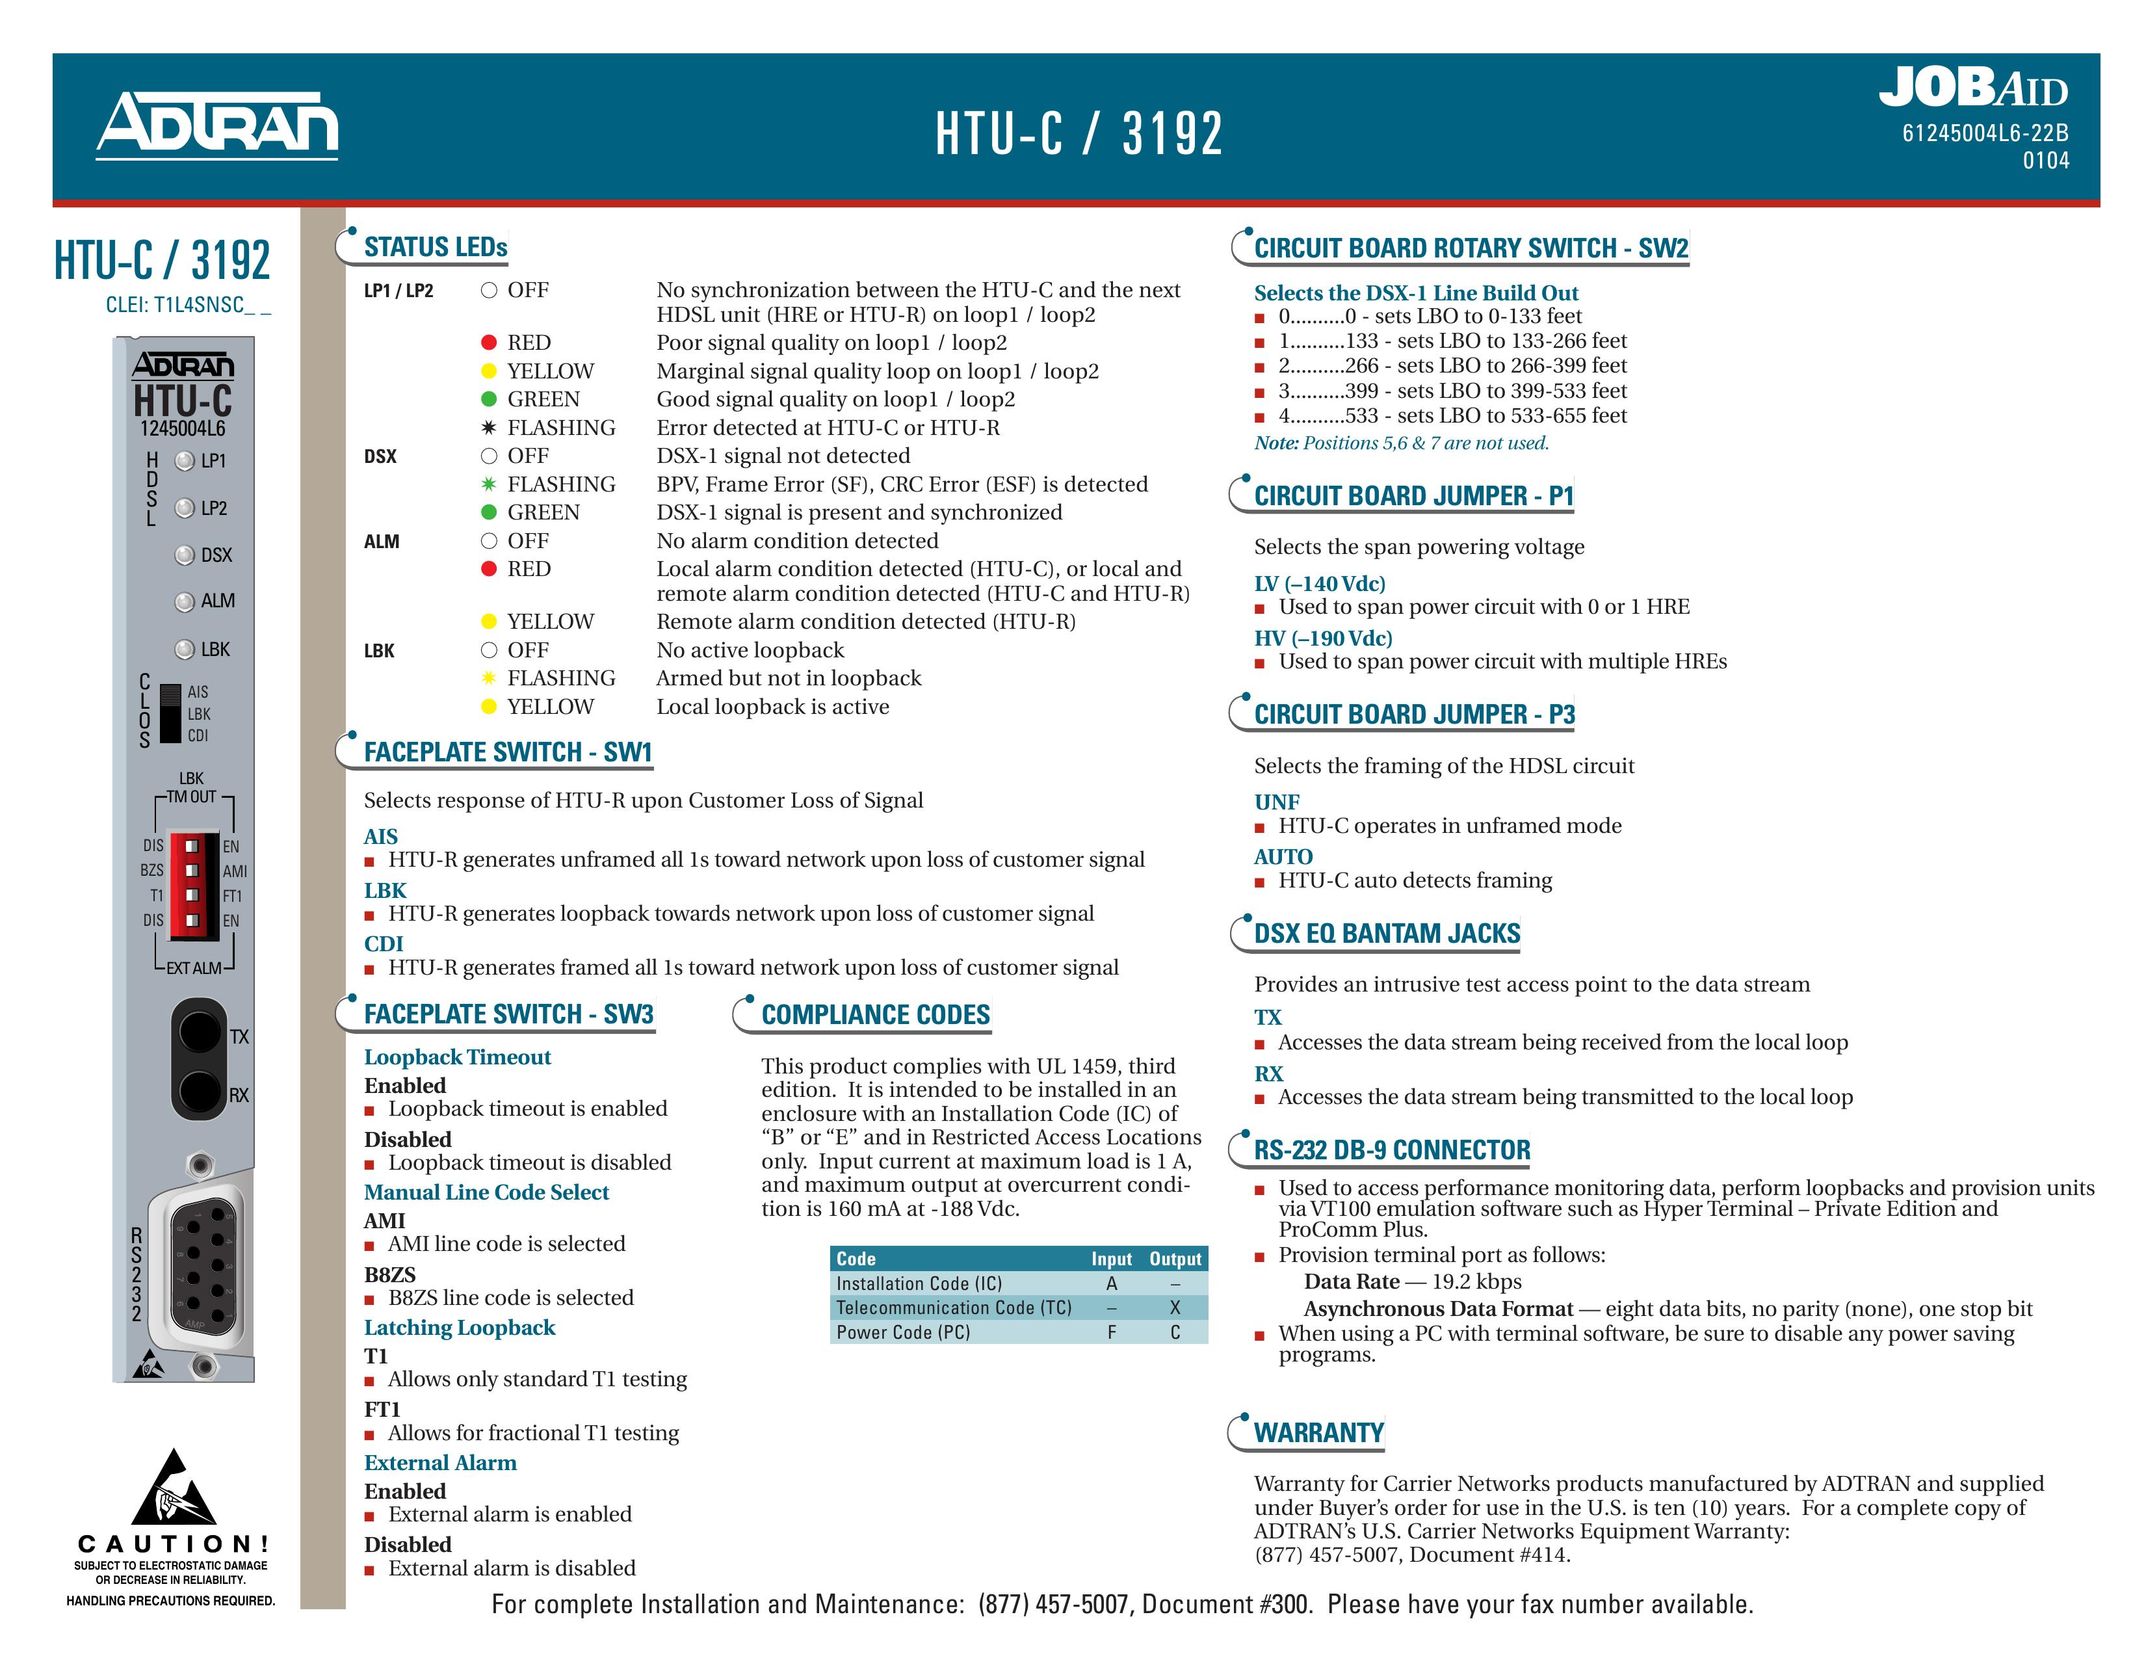 ADTRAN HTU-C / 3192 Switch User Manual